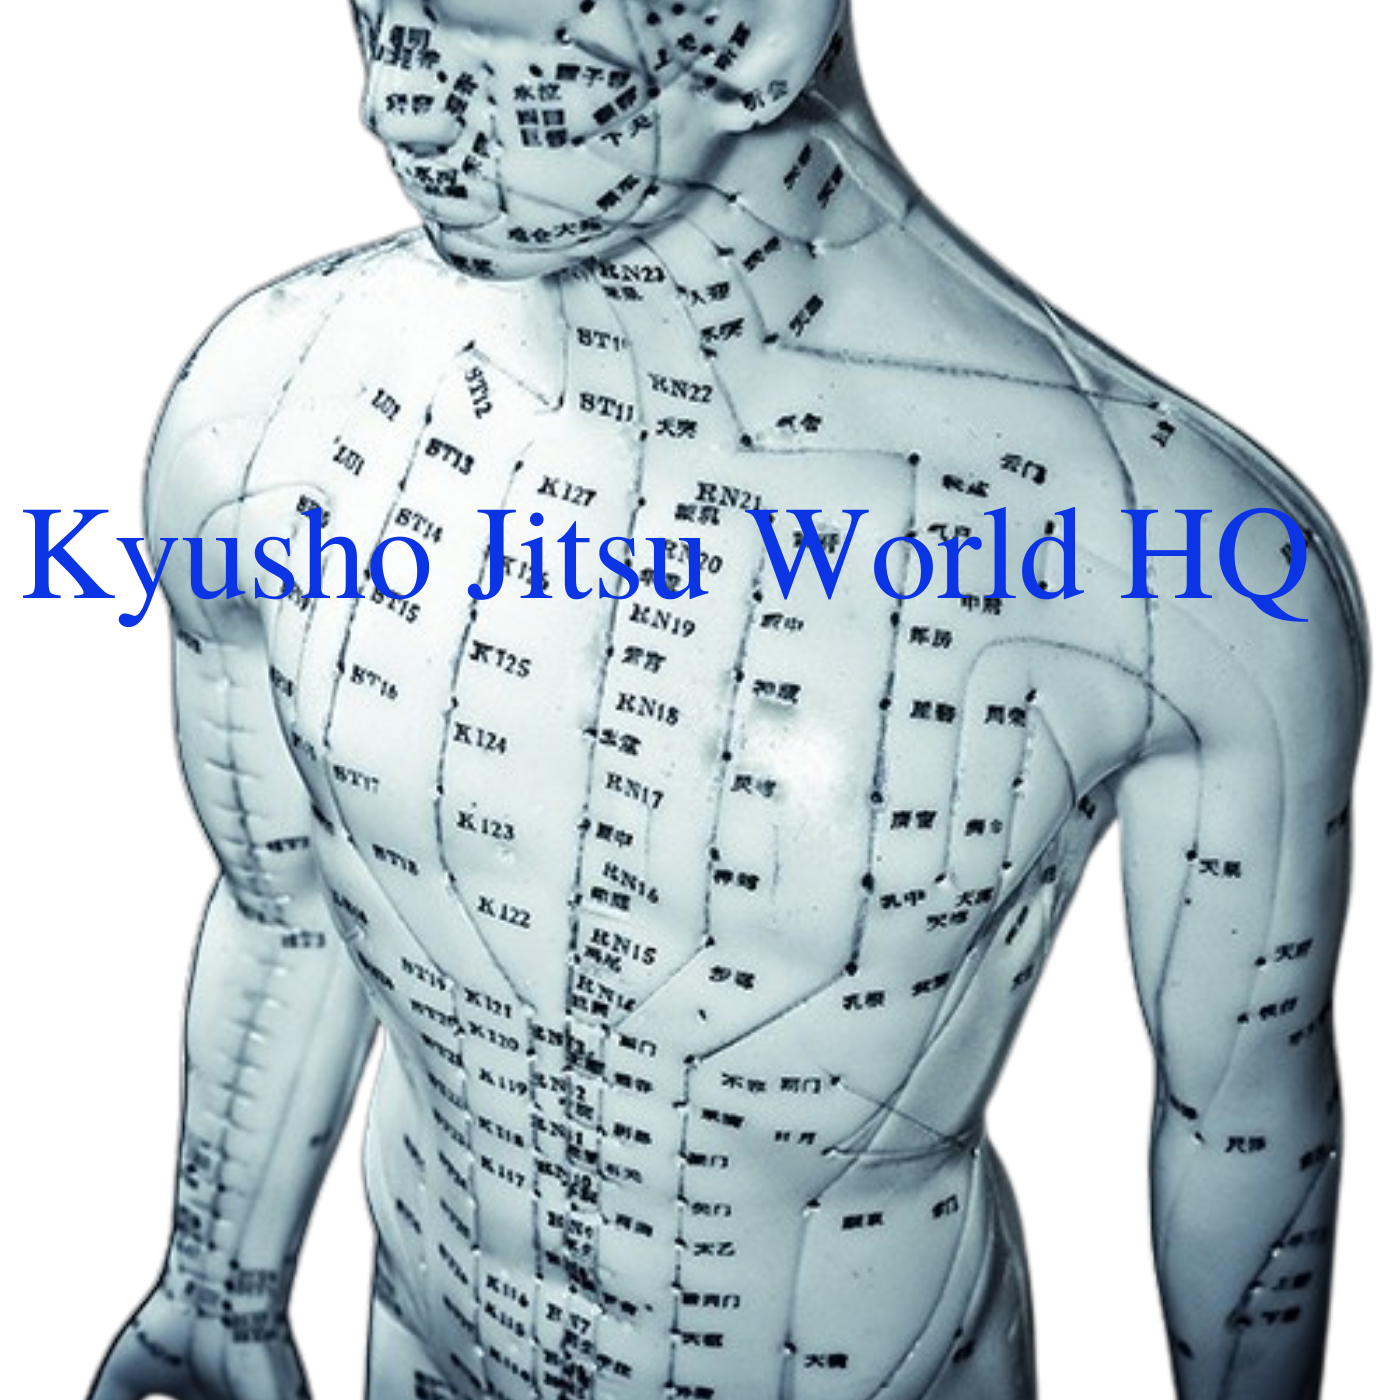 *Kyusho Jitsu World HQ